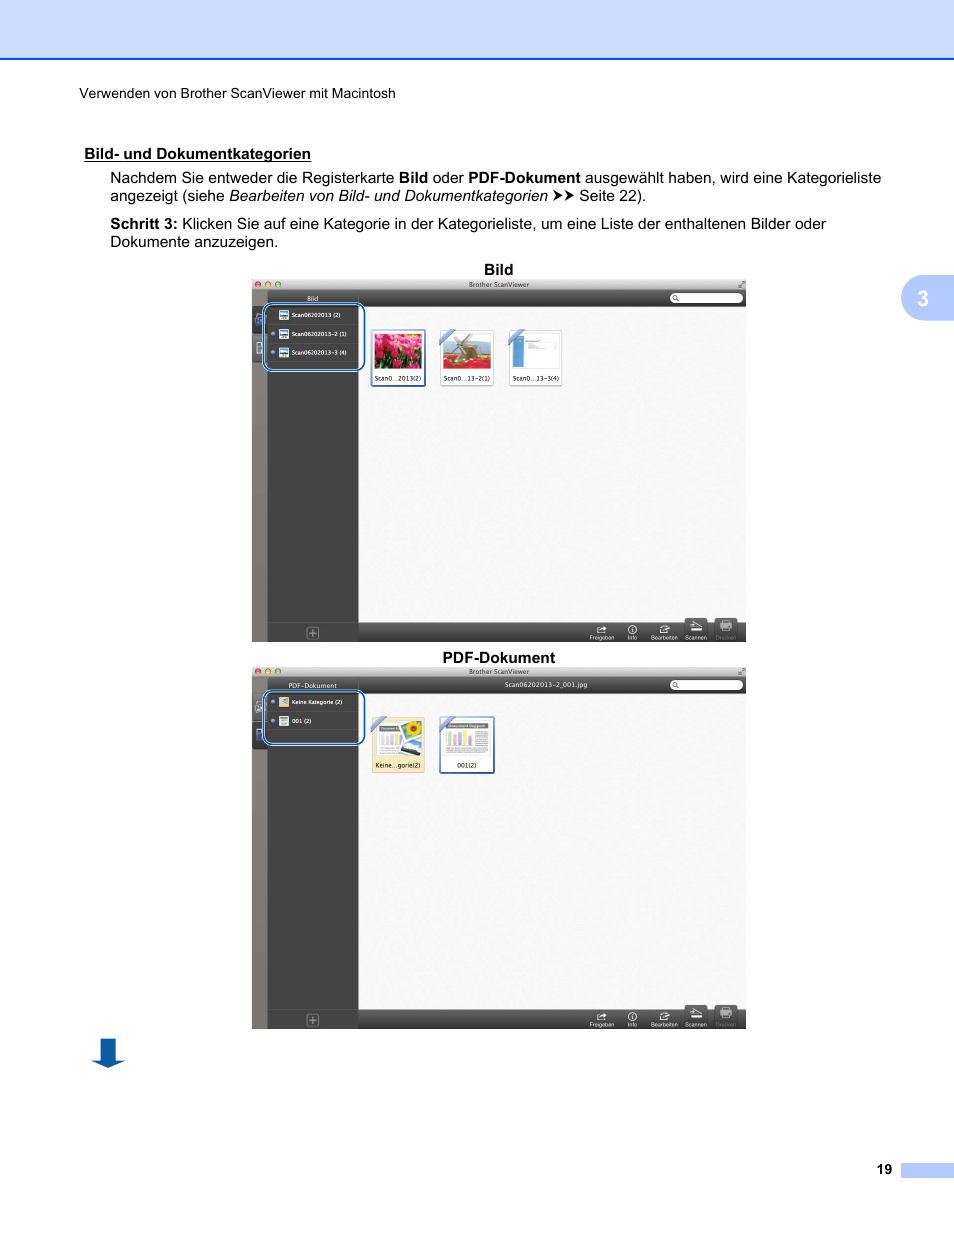 Brother ScanViewer für iOS/OS X Benutzerhandbuch | Seite 23 / 39